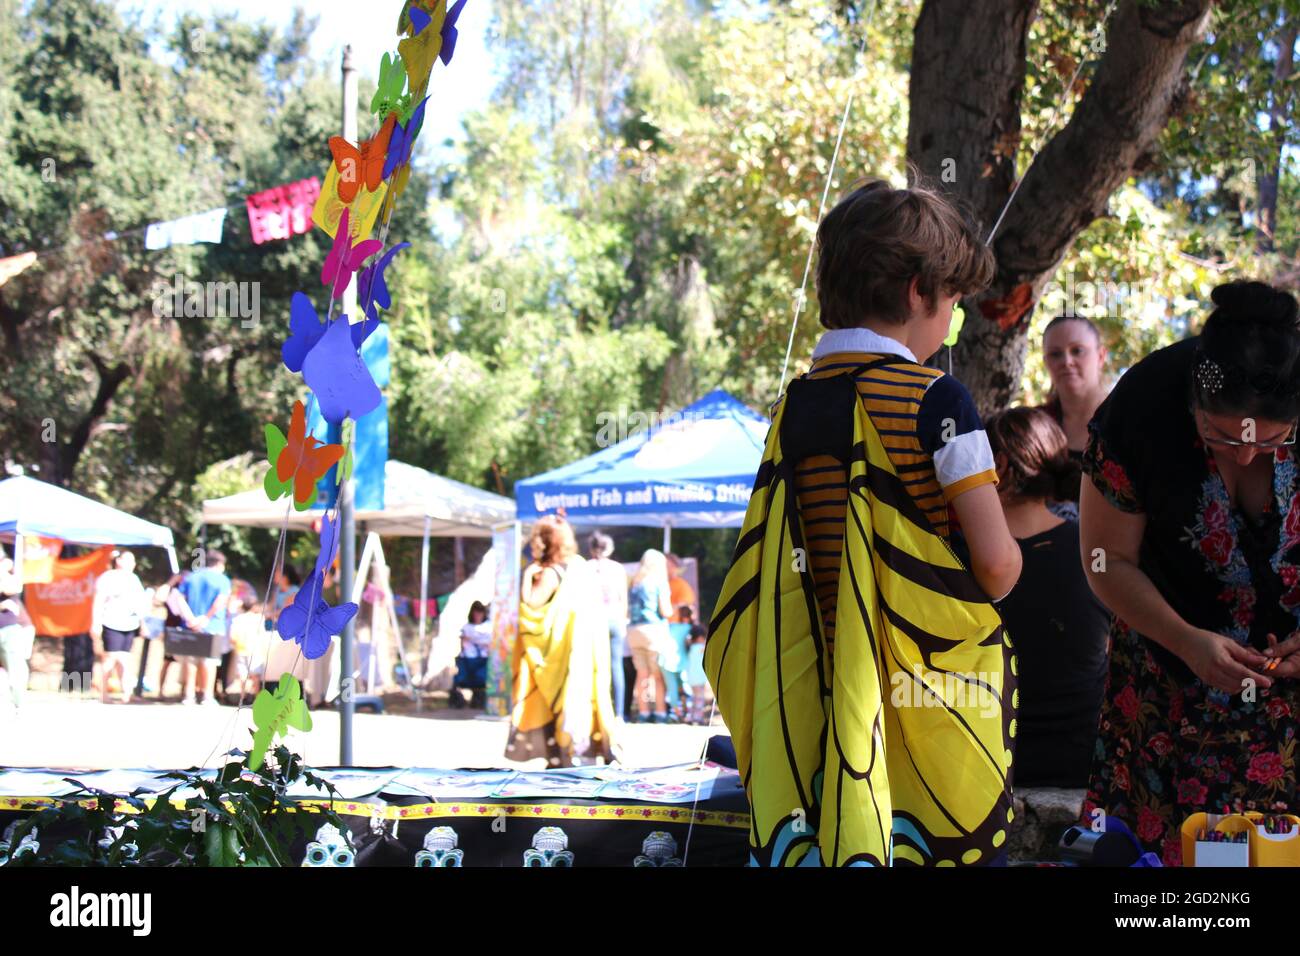 PASADENA, Kalifornien - EIN Monarch-Festival mit einem Dia de los Muertos-Twist! Beim Dia de los Muertos Monarch Butterfly Festival, das am 28. Oktober 2017 in Pasadena stattfand, hängen Kinder und Erwachsene Papiermonarchen an einem Baum, um vergangene Geliebte und überwinterende Monarchen zu repräsentieren. Stockfoto